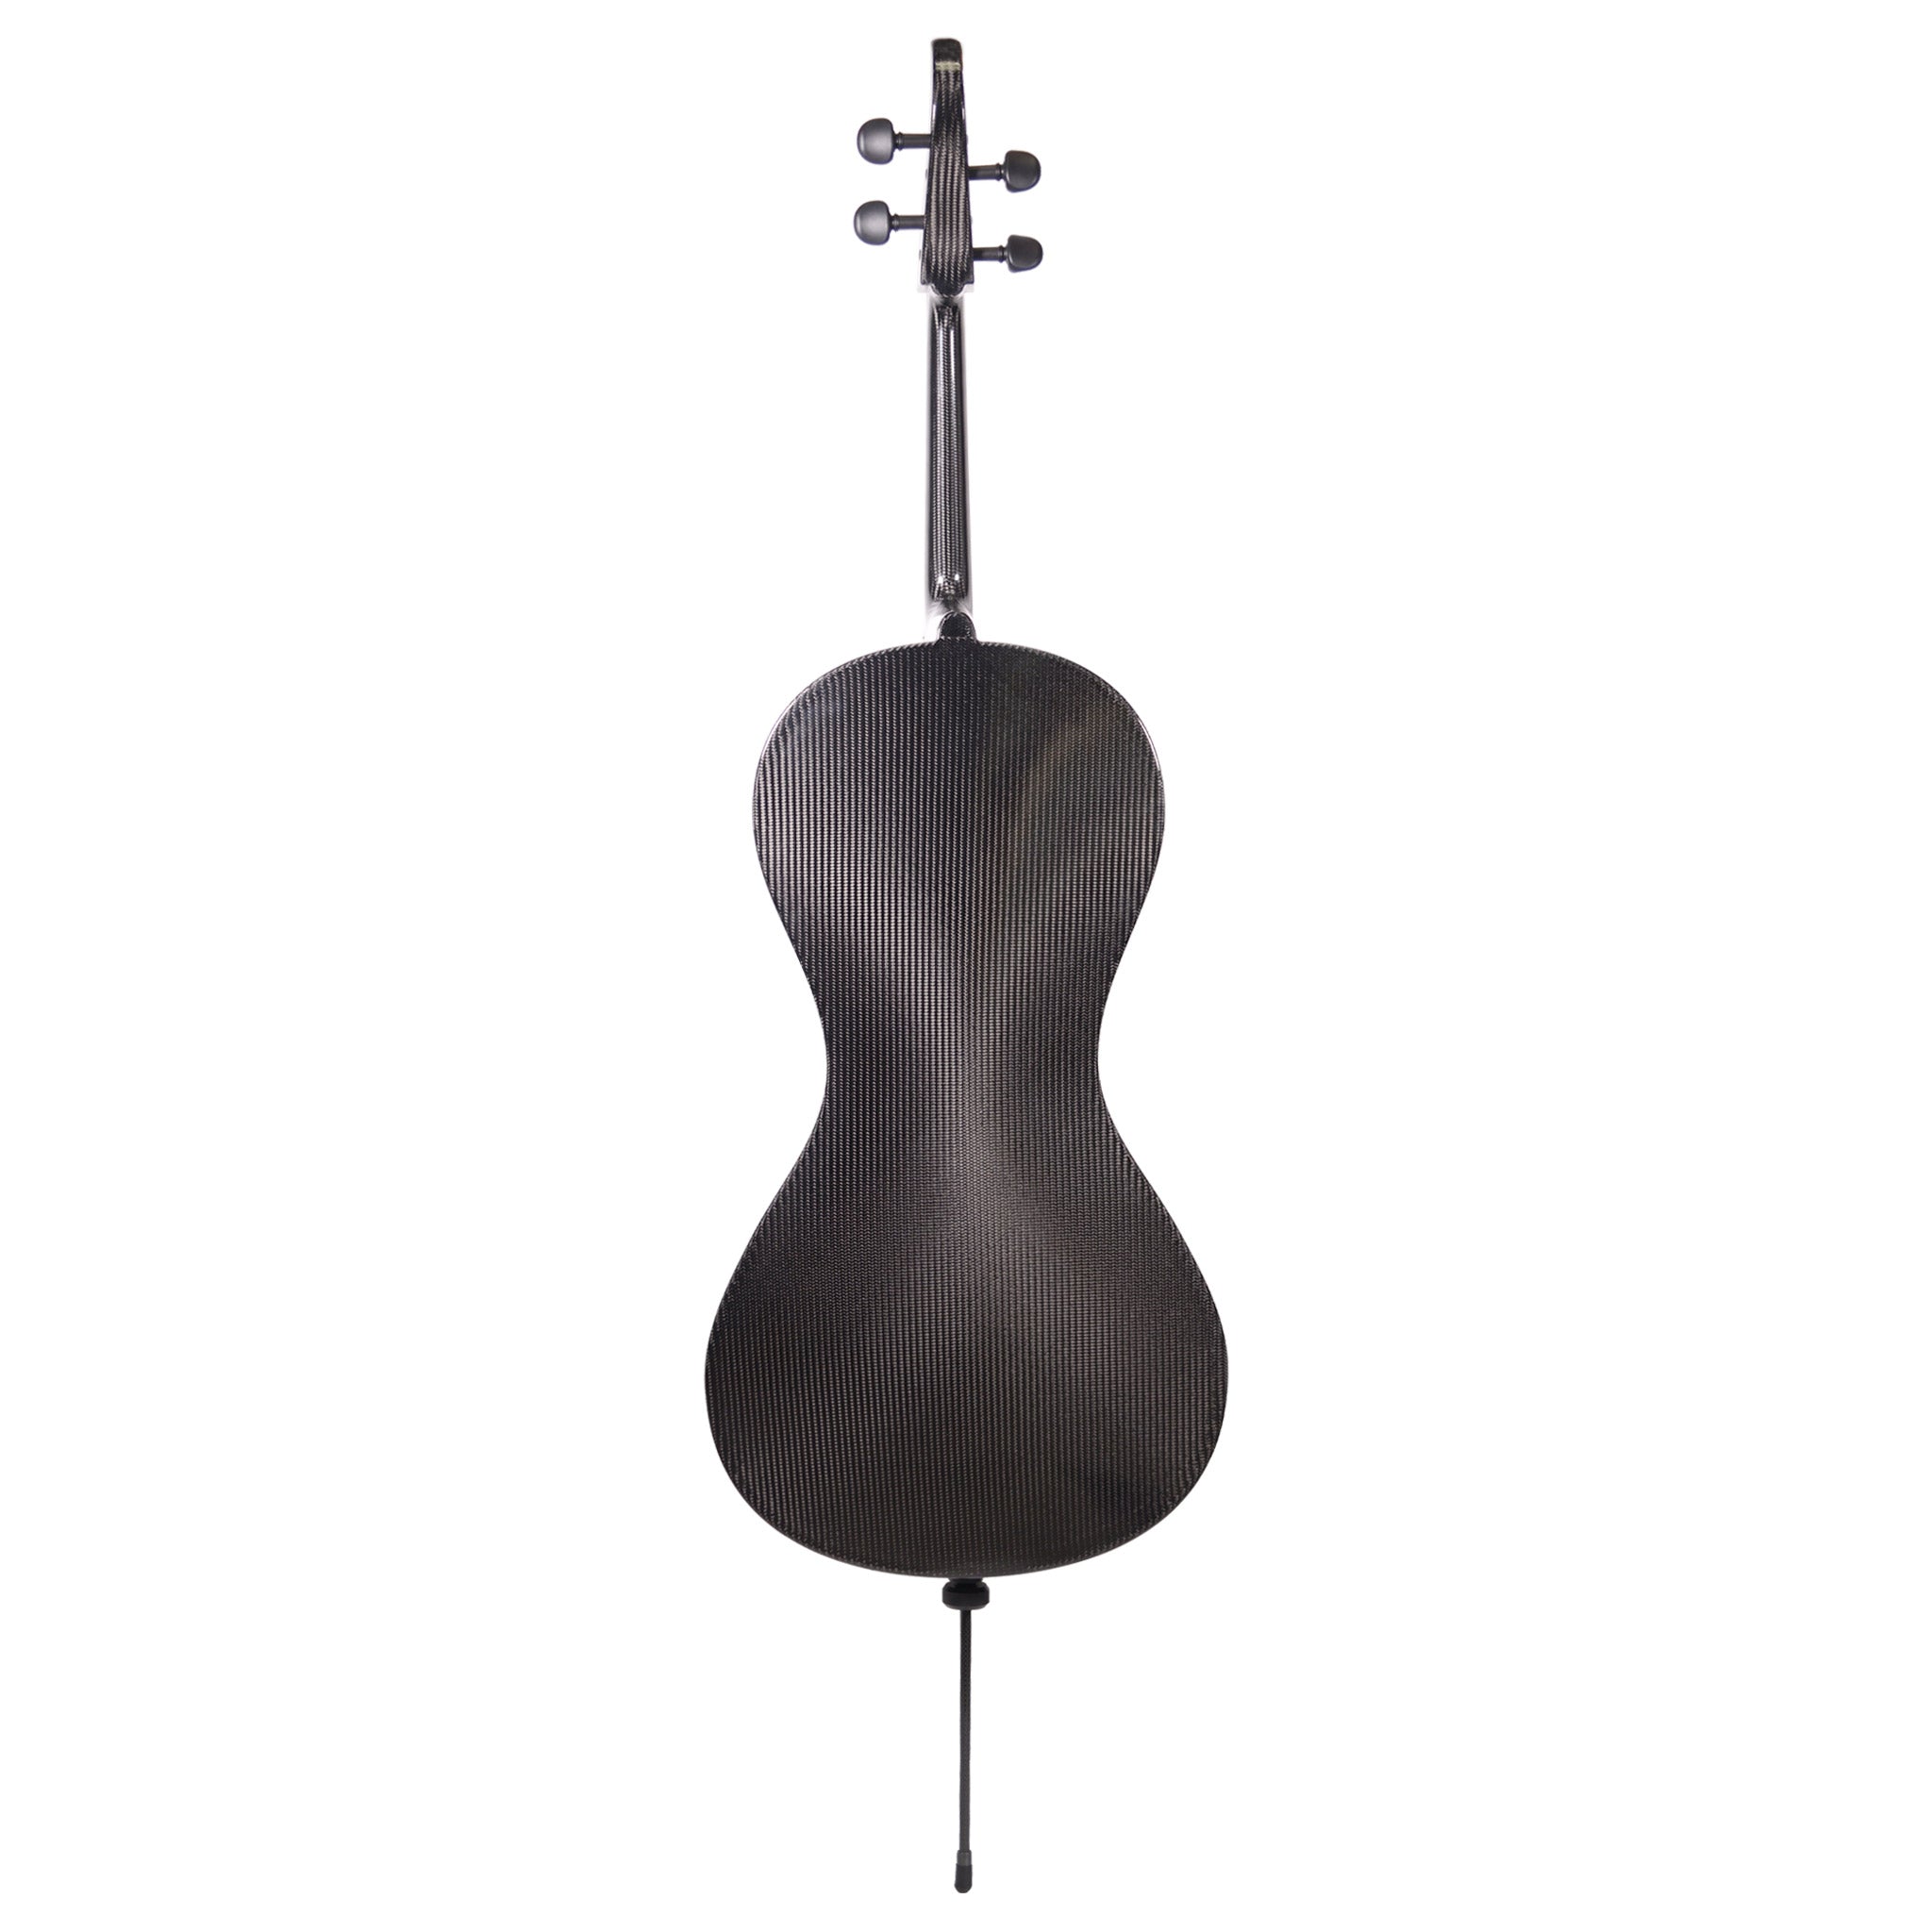 B-Stock Mezzo-Forte Carbon Fiber Evo Line Cello